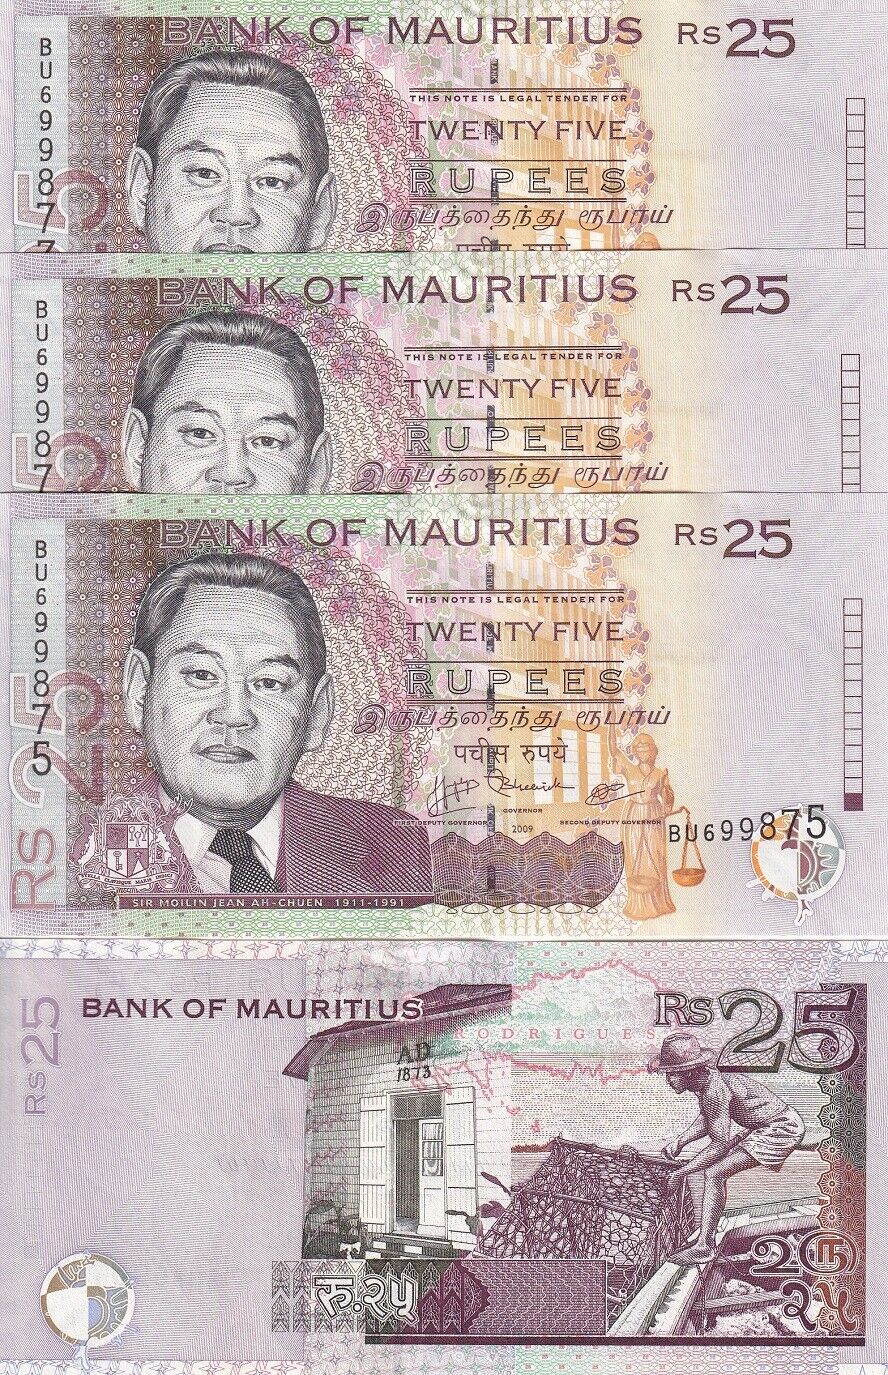 Mauritius 25 Rupees 2009 P 49 d UNC LOT 3 PCS